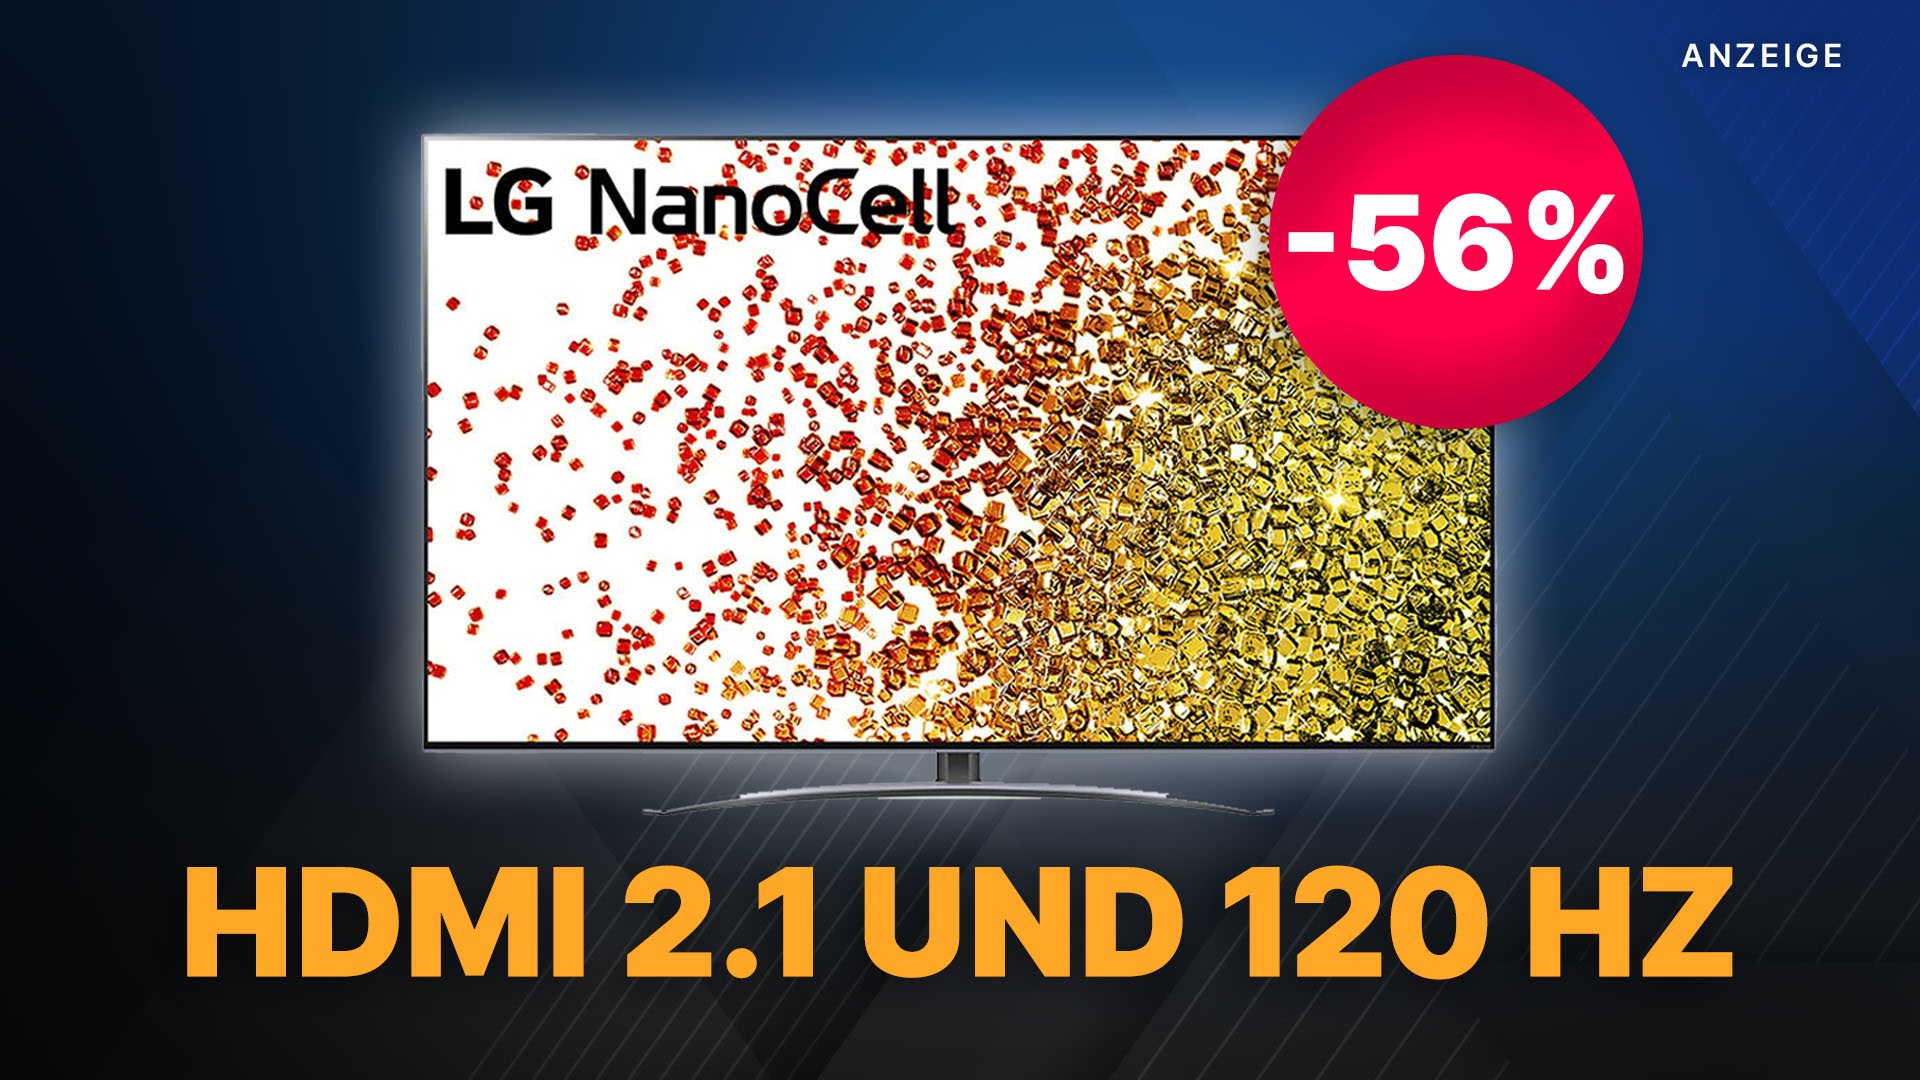 HDMI 2.1 und 120 Hz: LG Gaming-TV um mehr als die Hälfte reduziert